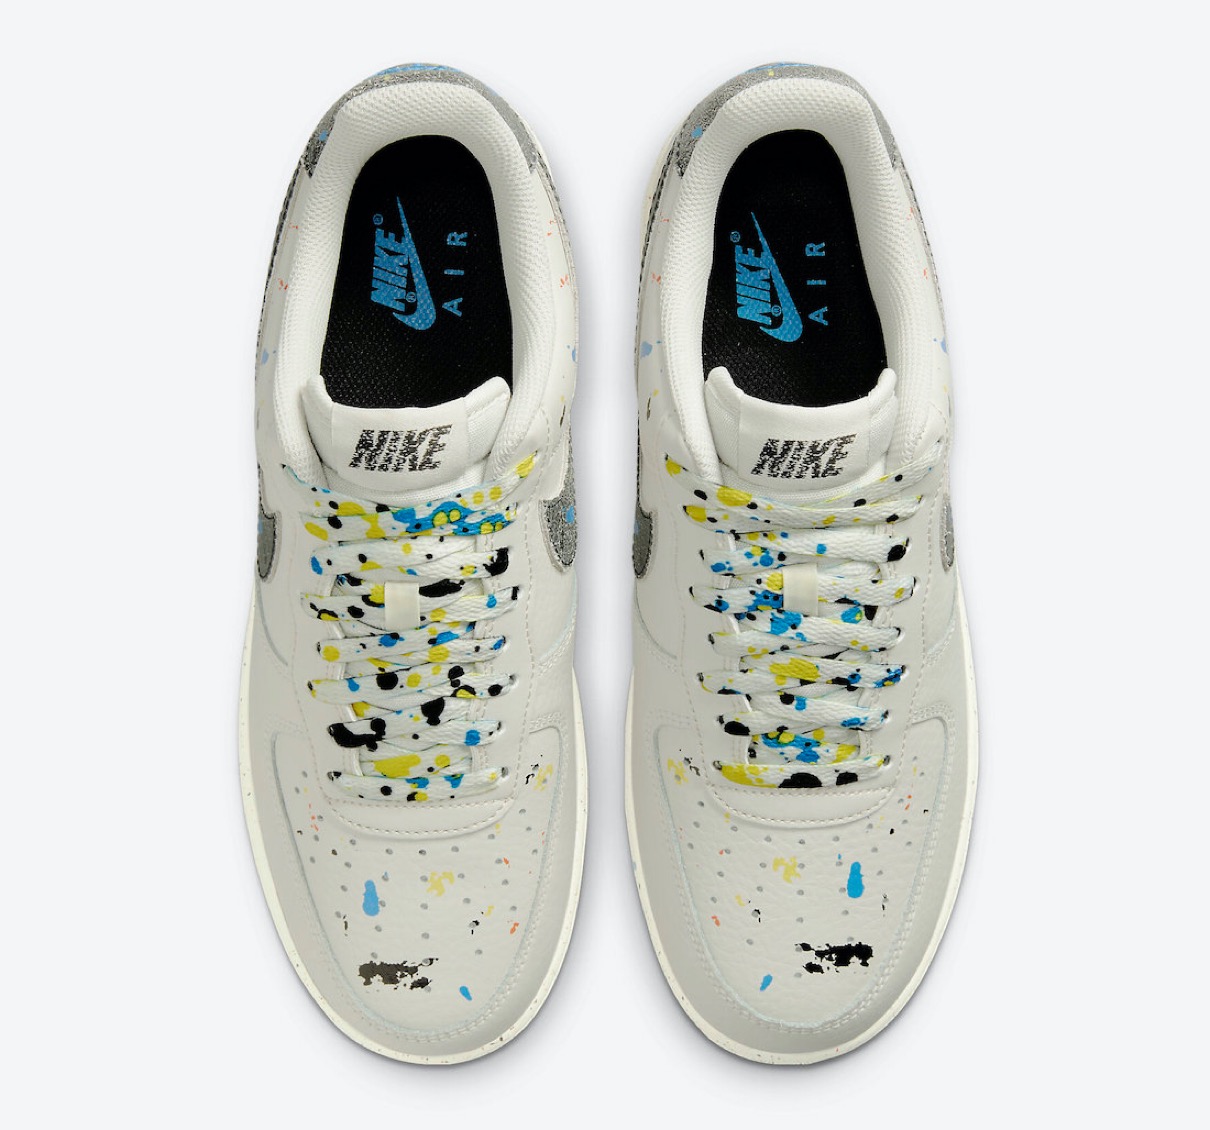 Nike】Air Force 1 & Blazer '77 “Paint Splatter” Packが国内4月23日